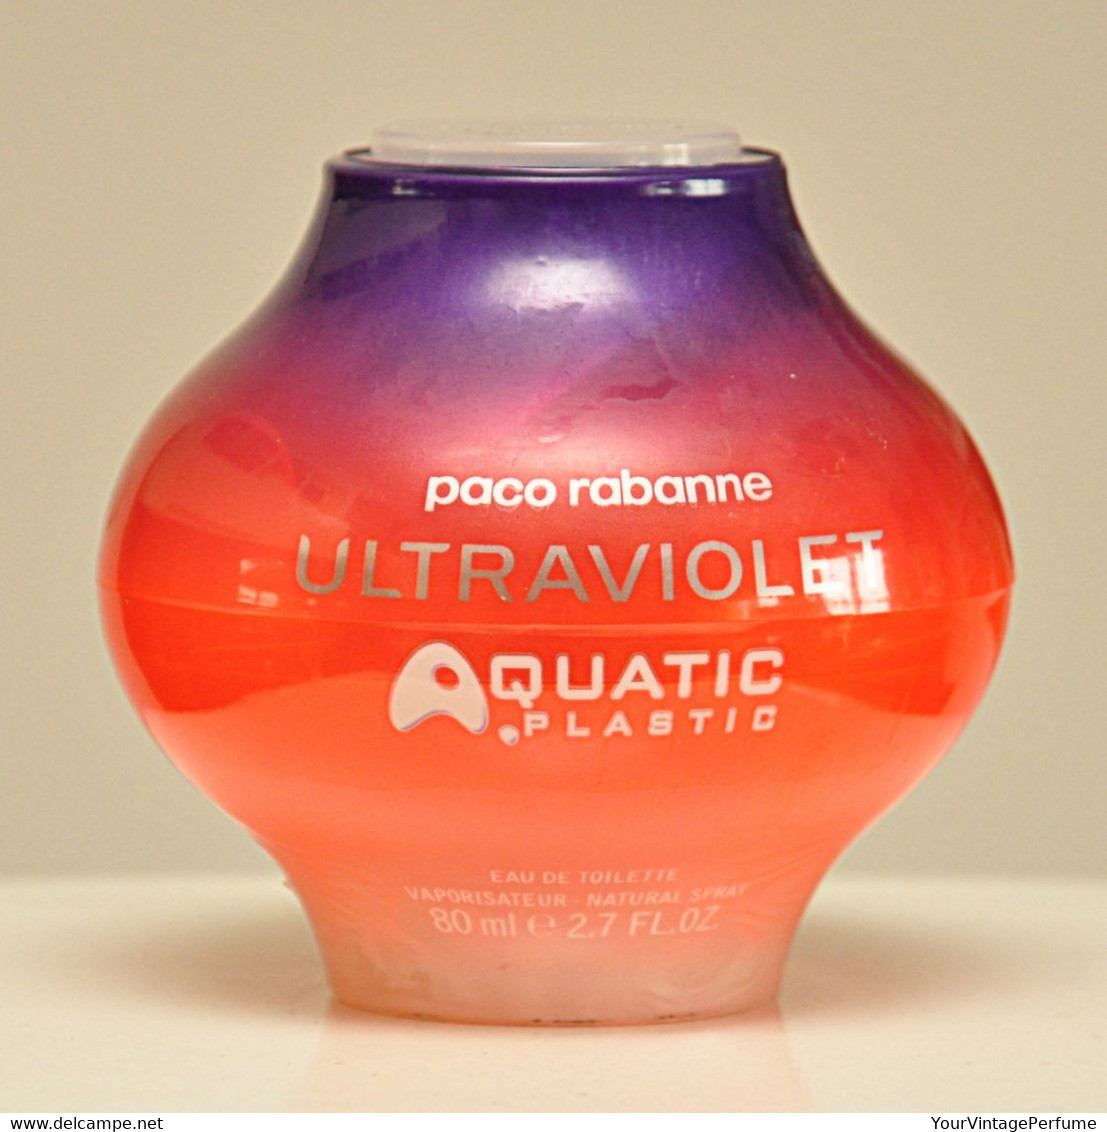 Paco Rabanne Ultraviolet Aquatic Plastic Eau De Toilette Edt 80ml 2.7 Fl. Oz. Spray Perfume For Woman Rare Vintage 2002 - Donna